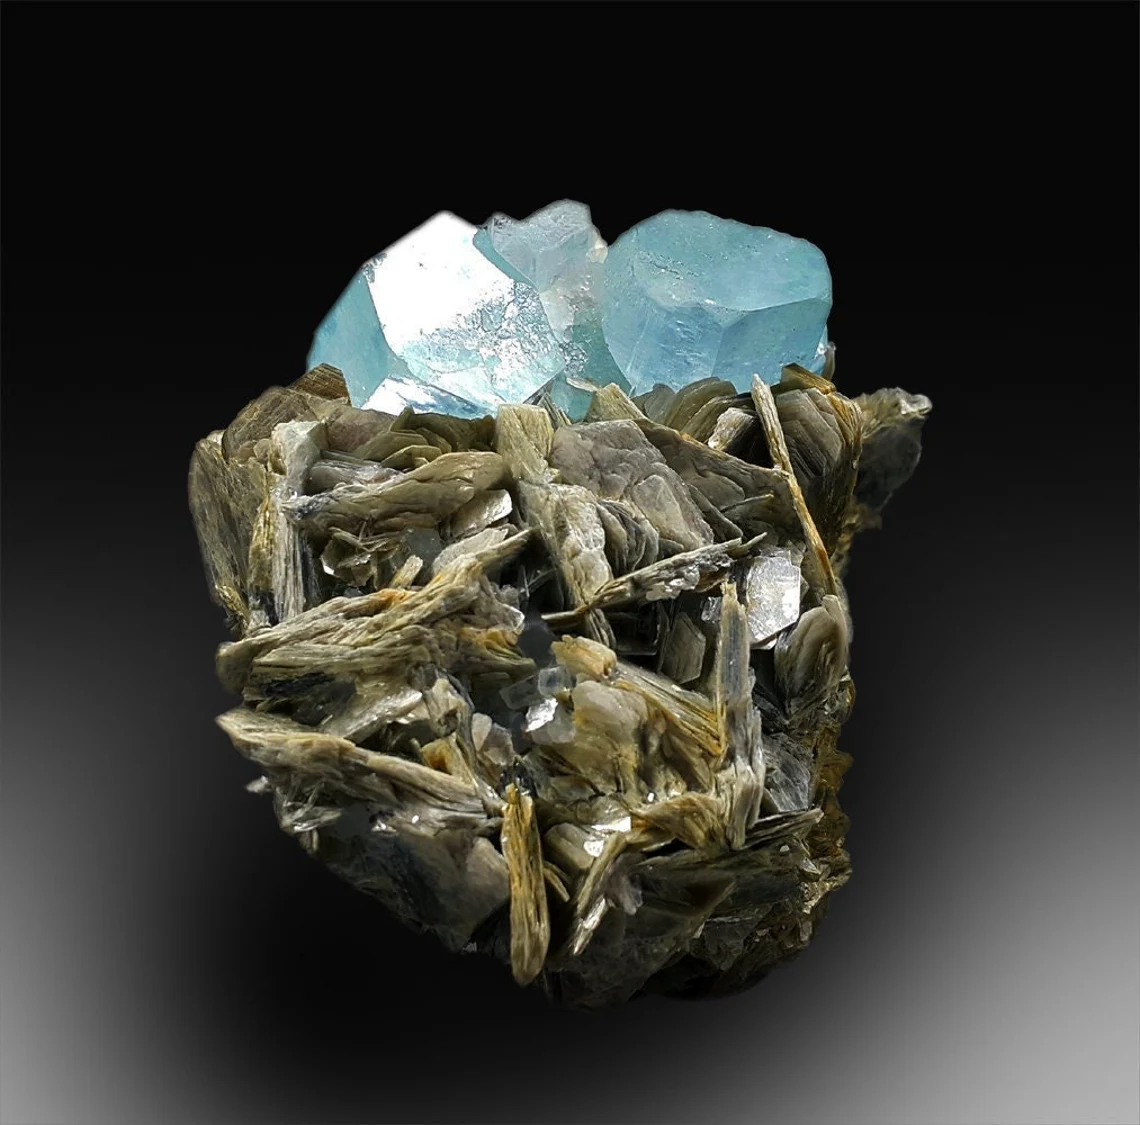 Aquamarine Specimen , Blue Aquamarine, Fine Mineral, Natural Aquamarine Crystals with Mica Specimen from Gilgit Pakistan - 892 Gram